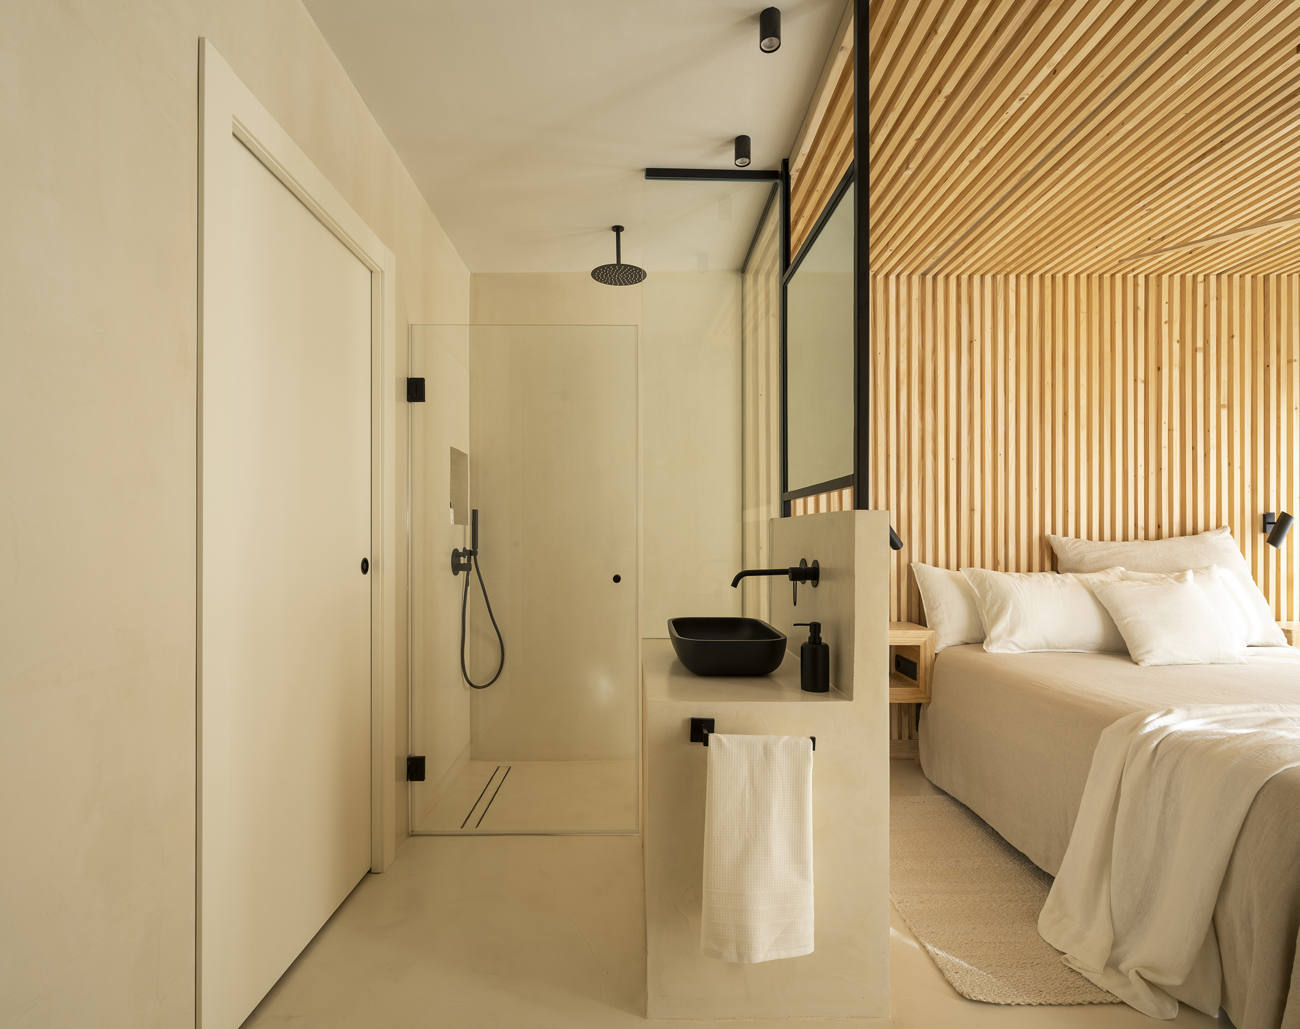  Wohnung in Köln mit Mikrozement und Holz im Schlafzimmer 